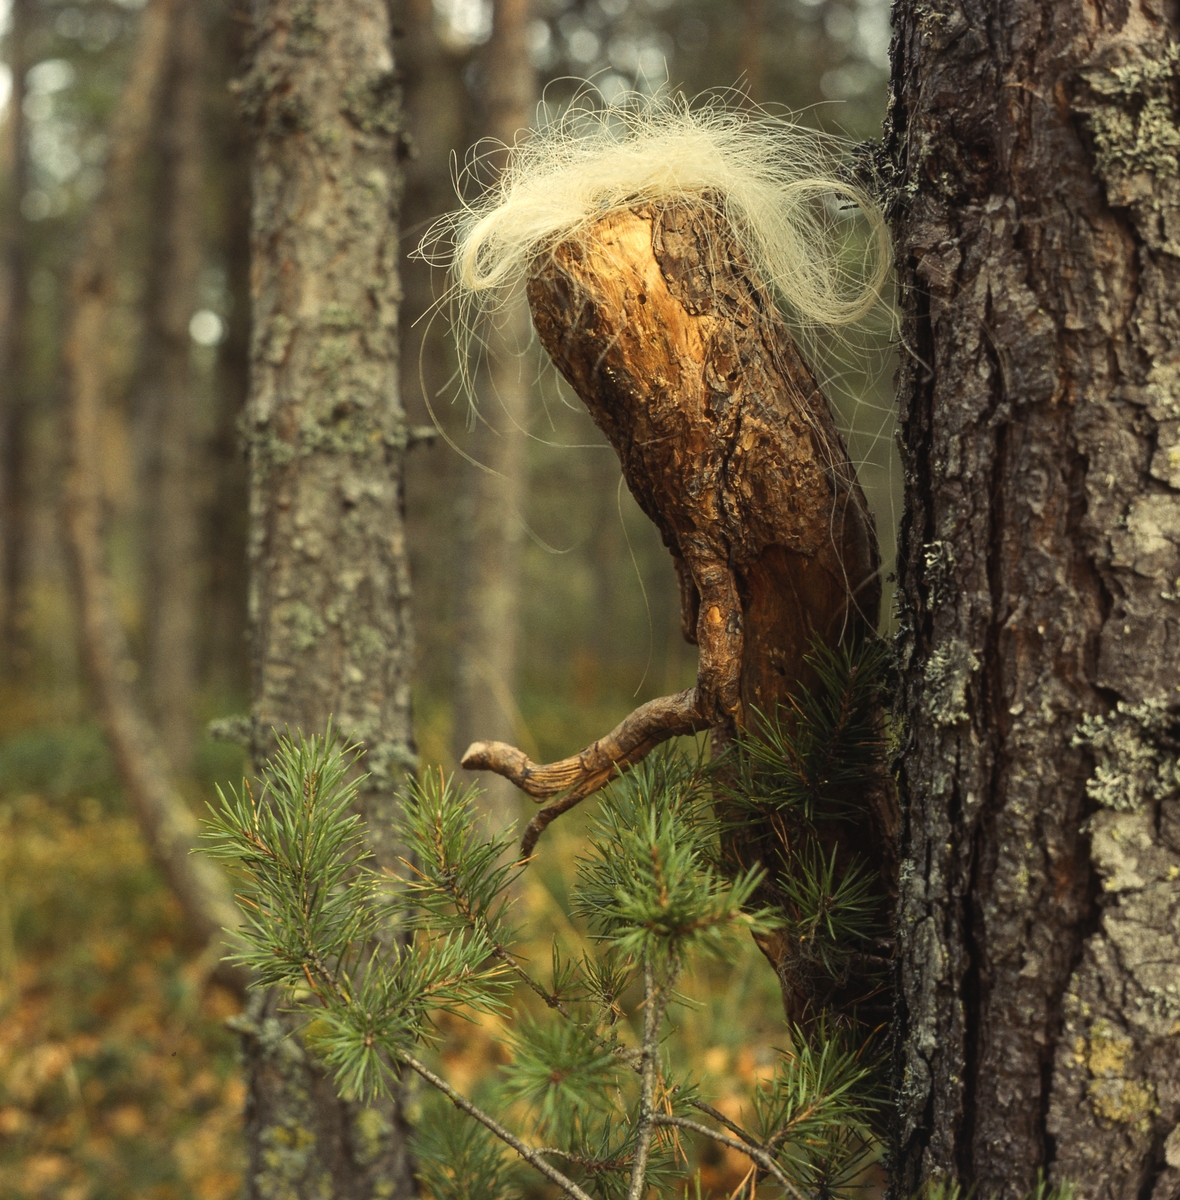 Trätrollet Skrälla Skrälle kikar fram bakom en tallstam i skogen.